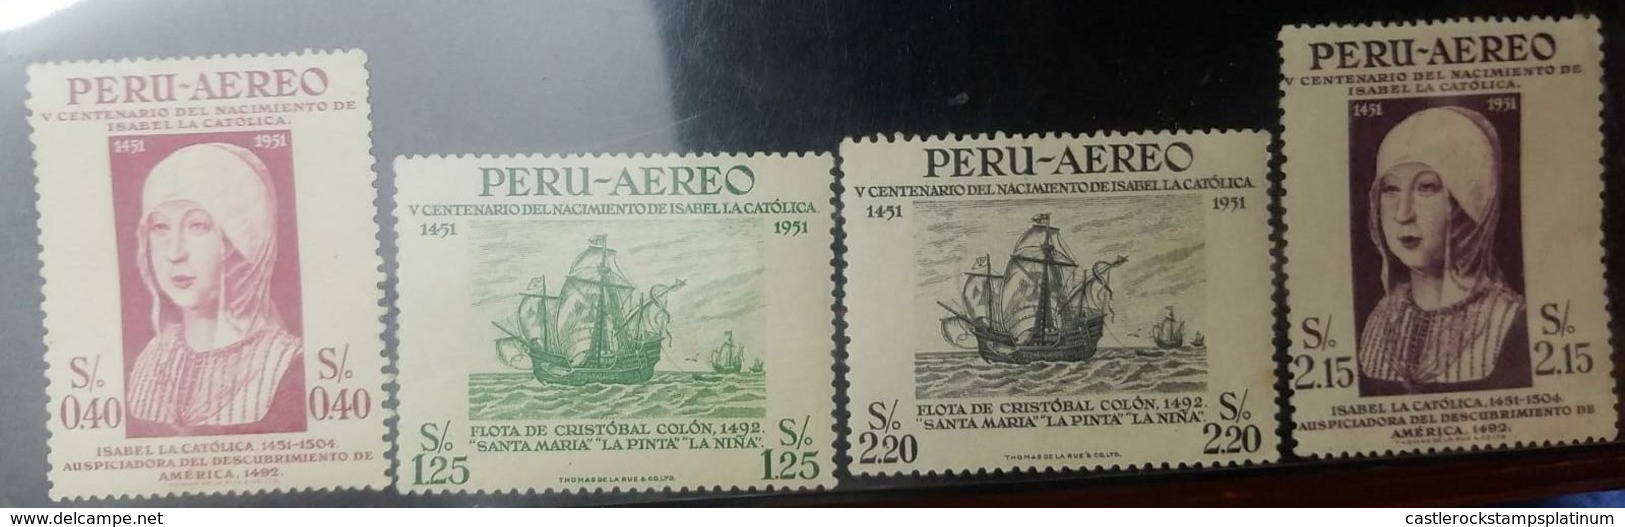 O) 1951 PERU, QUEEN ISABELLA I OF SPAIN-SCT C123 40c -SCT C125 2.15s- FLEET OF COLUMBUS SCT C124 1.25s -SCT C126 2.20s, - Peru